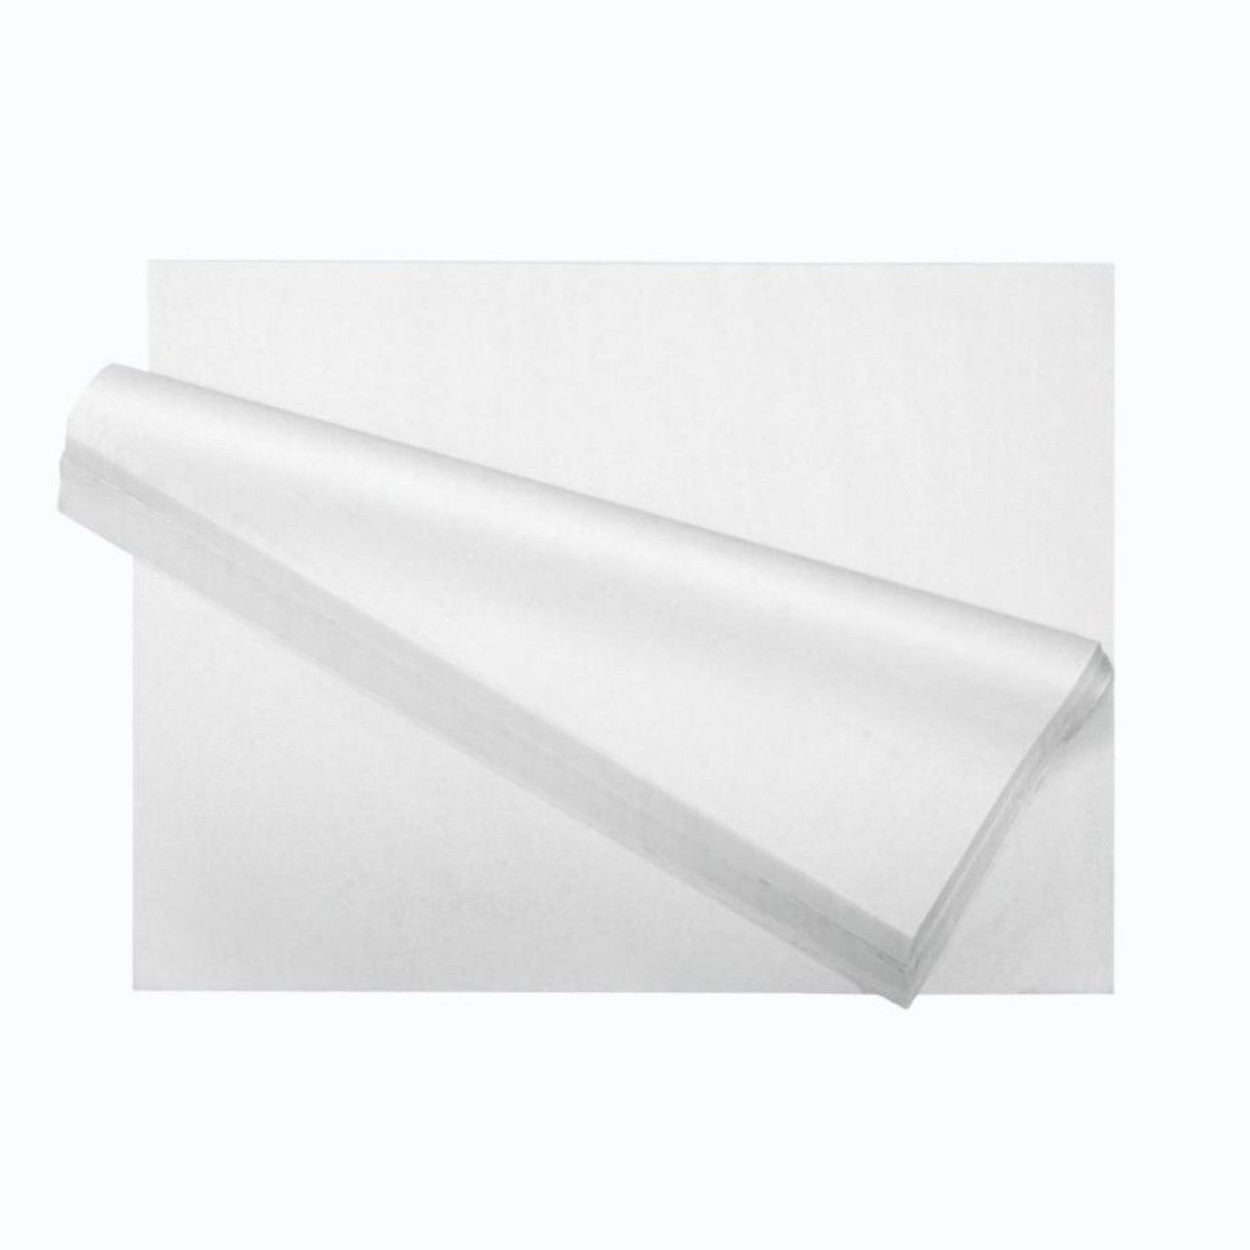 Tissue Paper Sheets - 12 x 18, White S-15430 - Uline